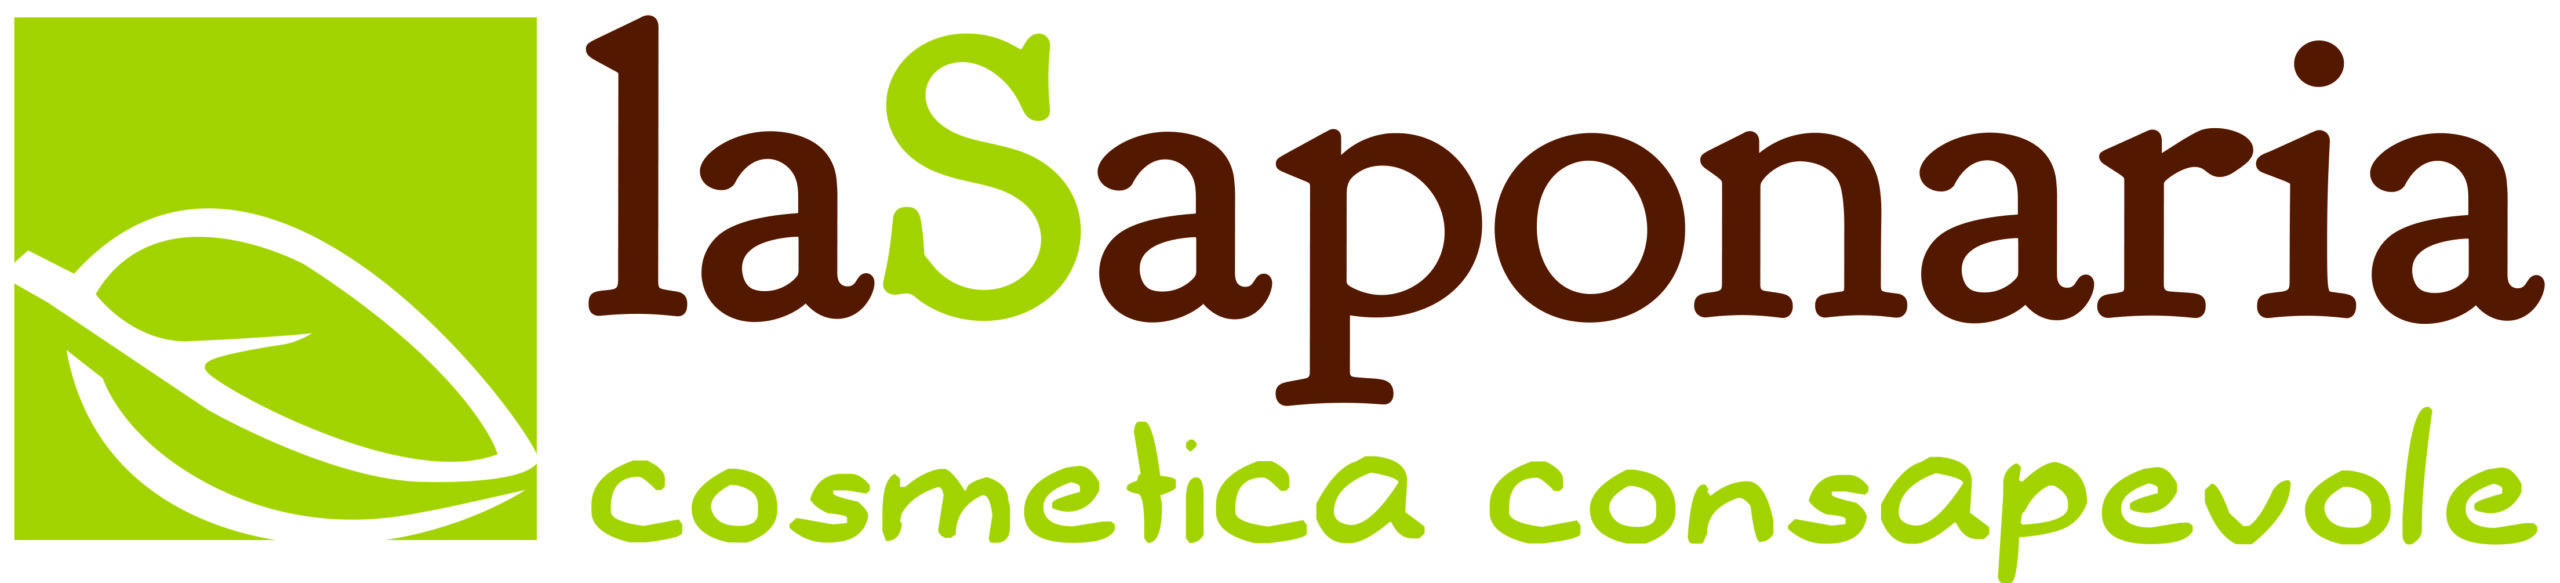 inDIVIDUALE Lucia Pascucci - Logo la Saponaria